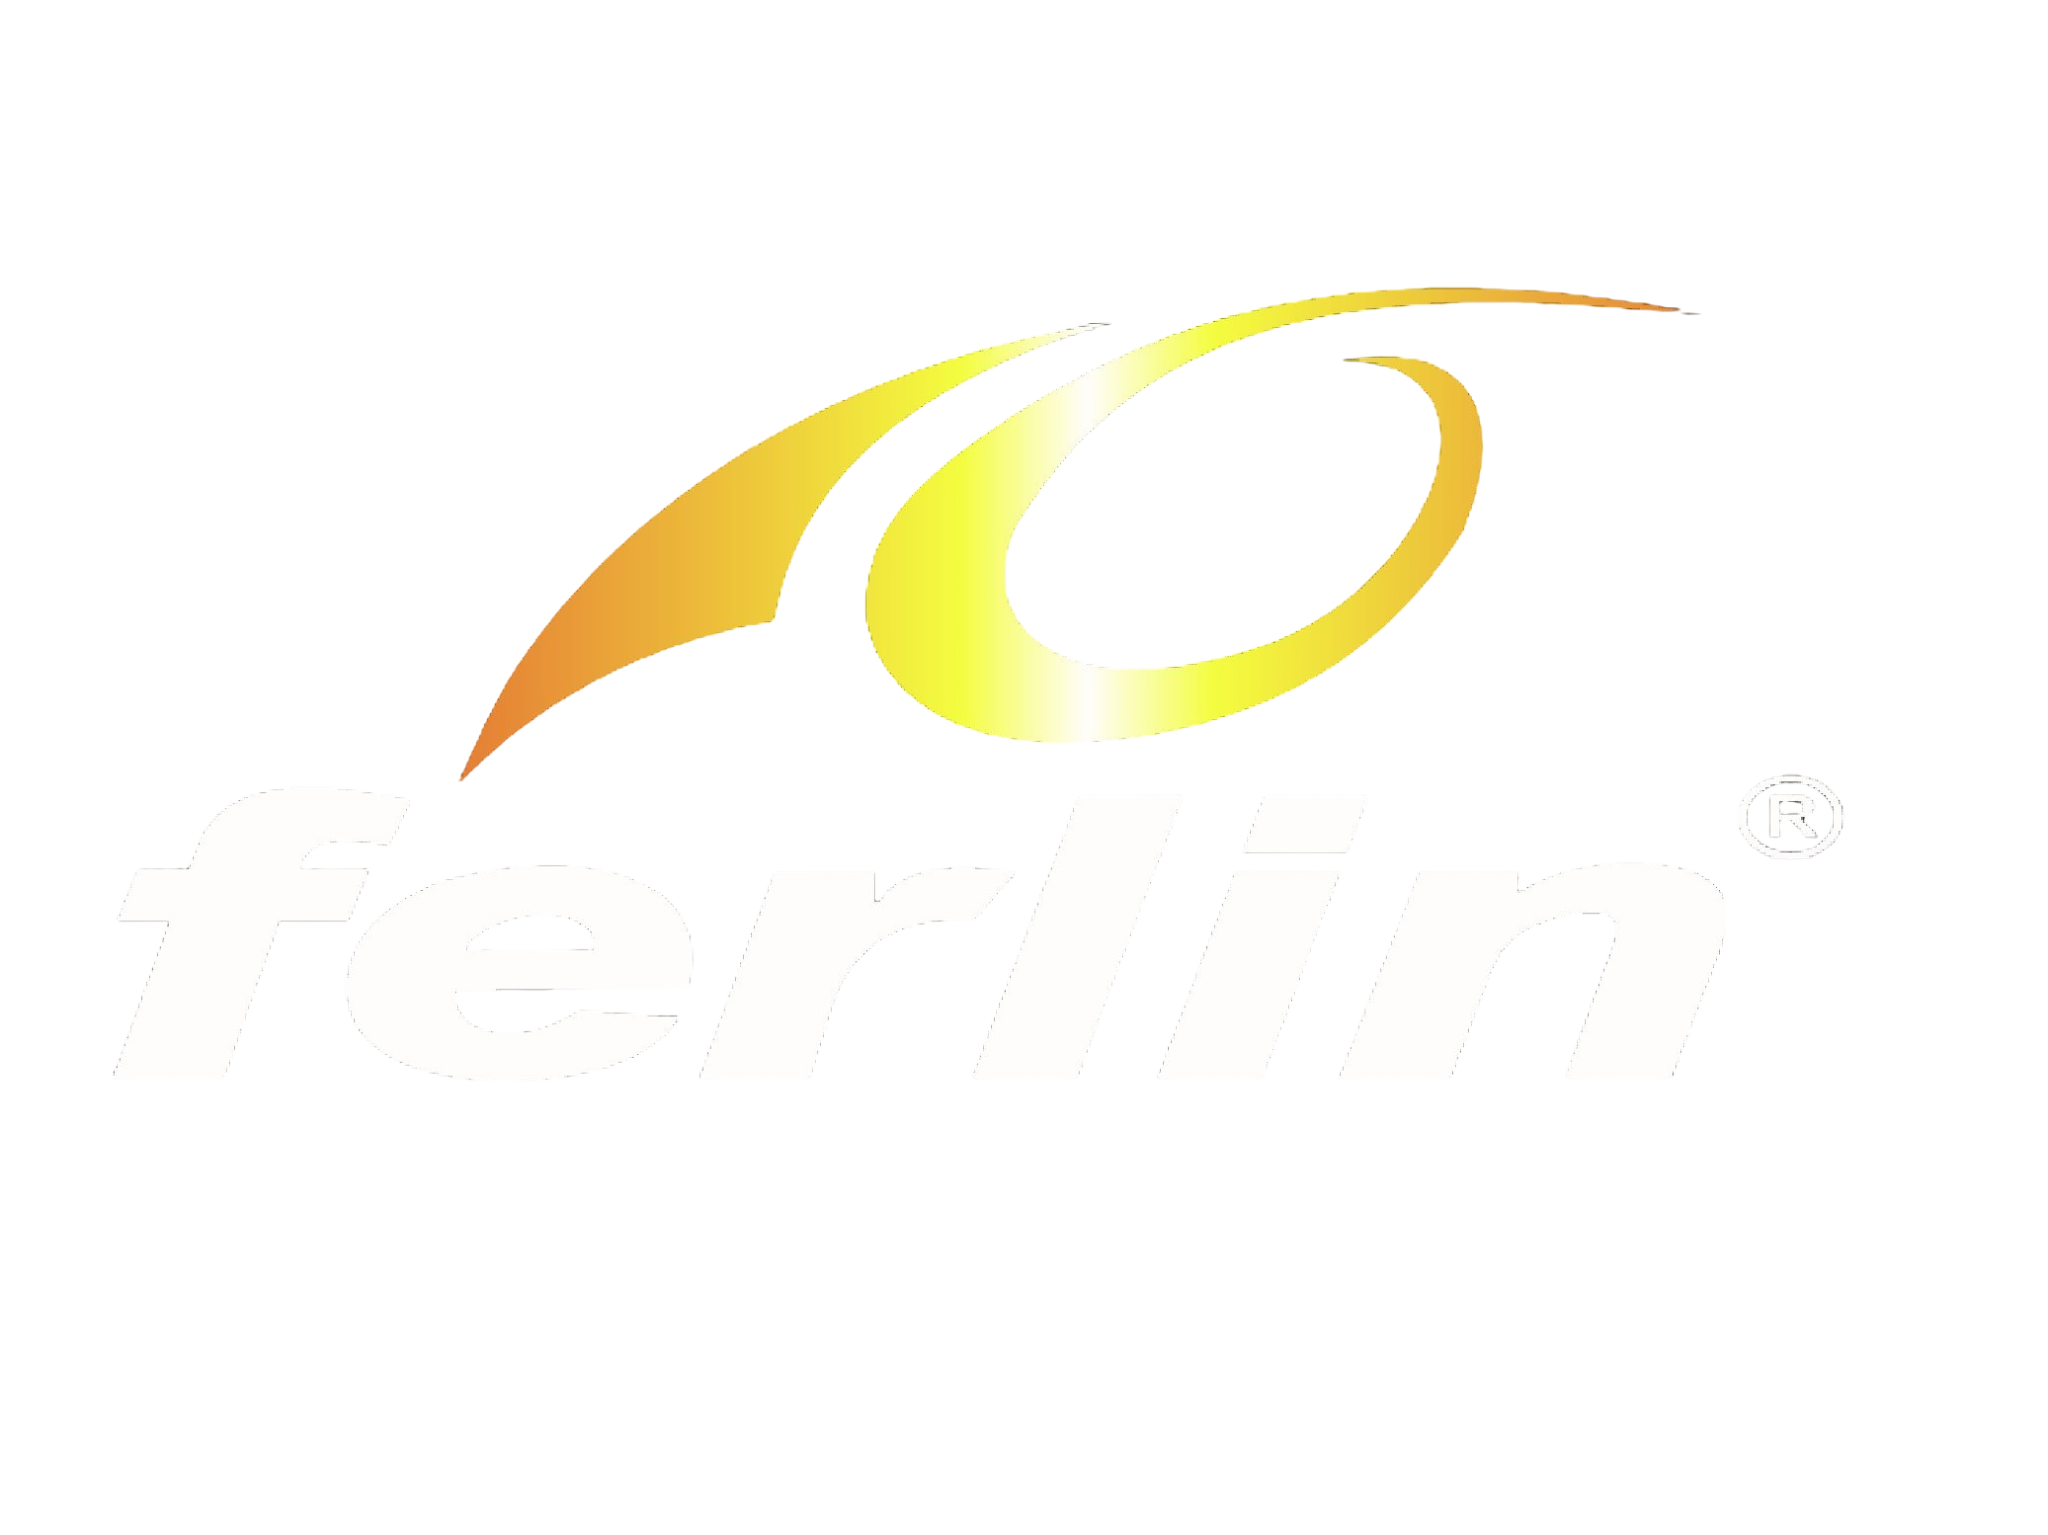 Ferlin